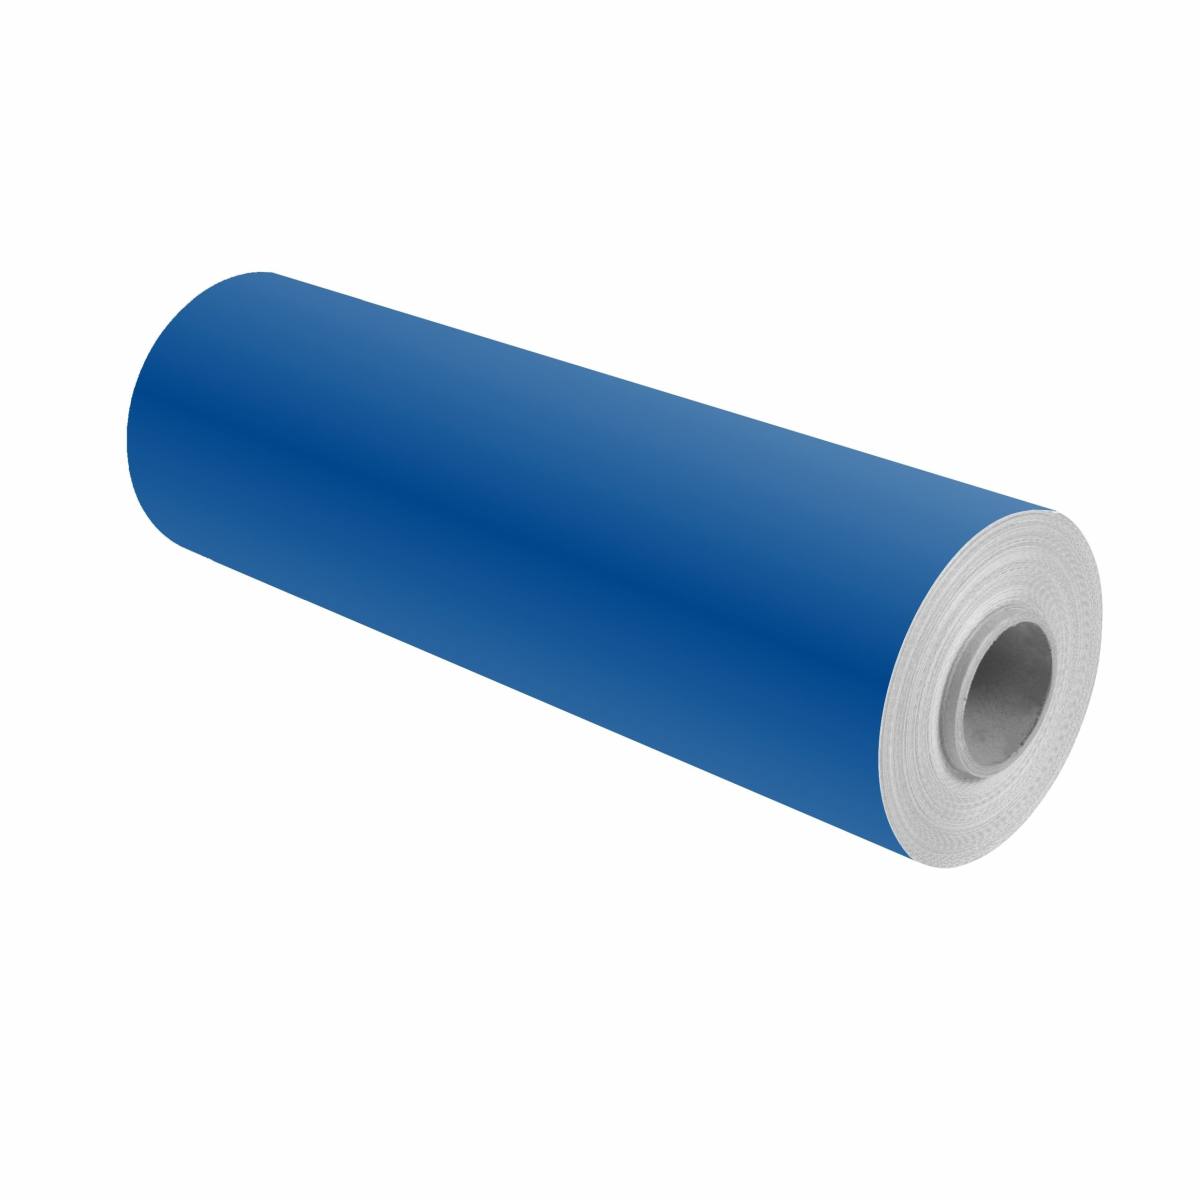 3M Scotchcal pellicola colorata 100-17 blu genziana 1,22 m x 50 m